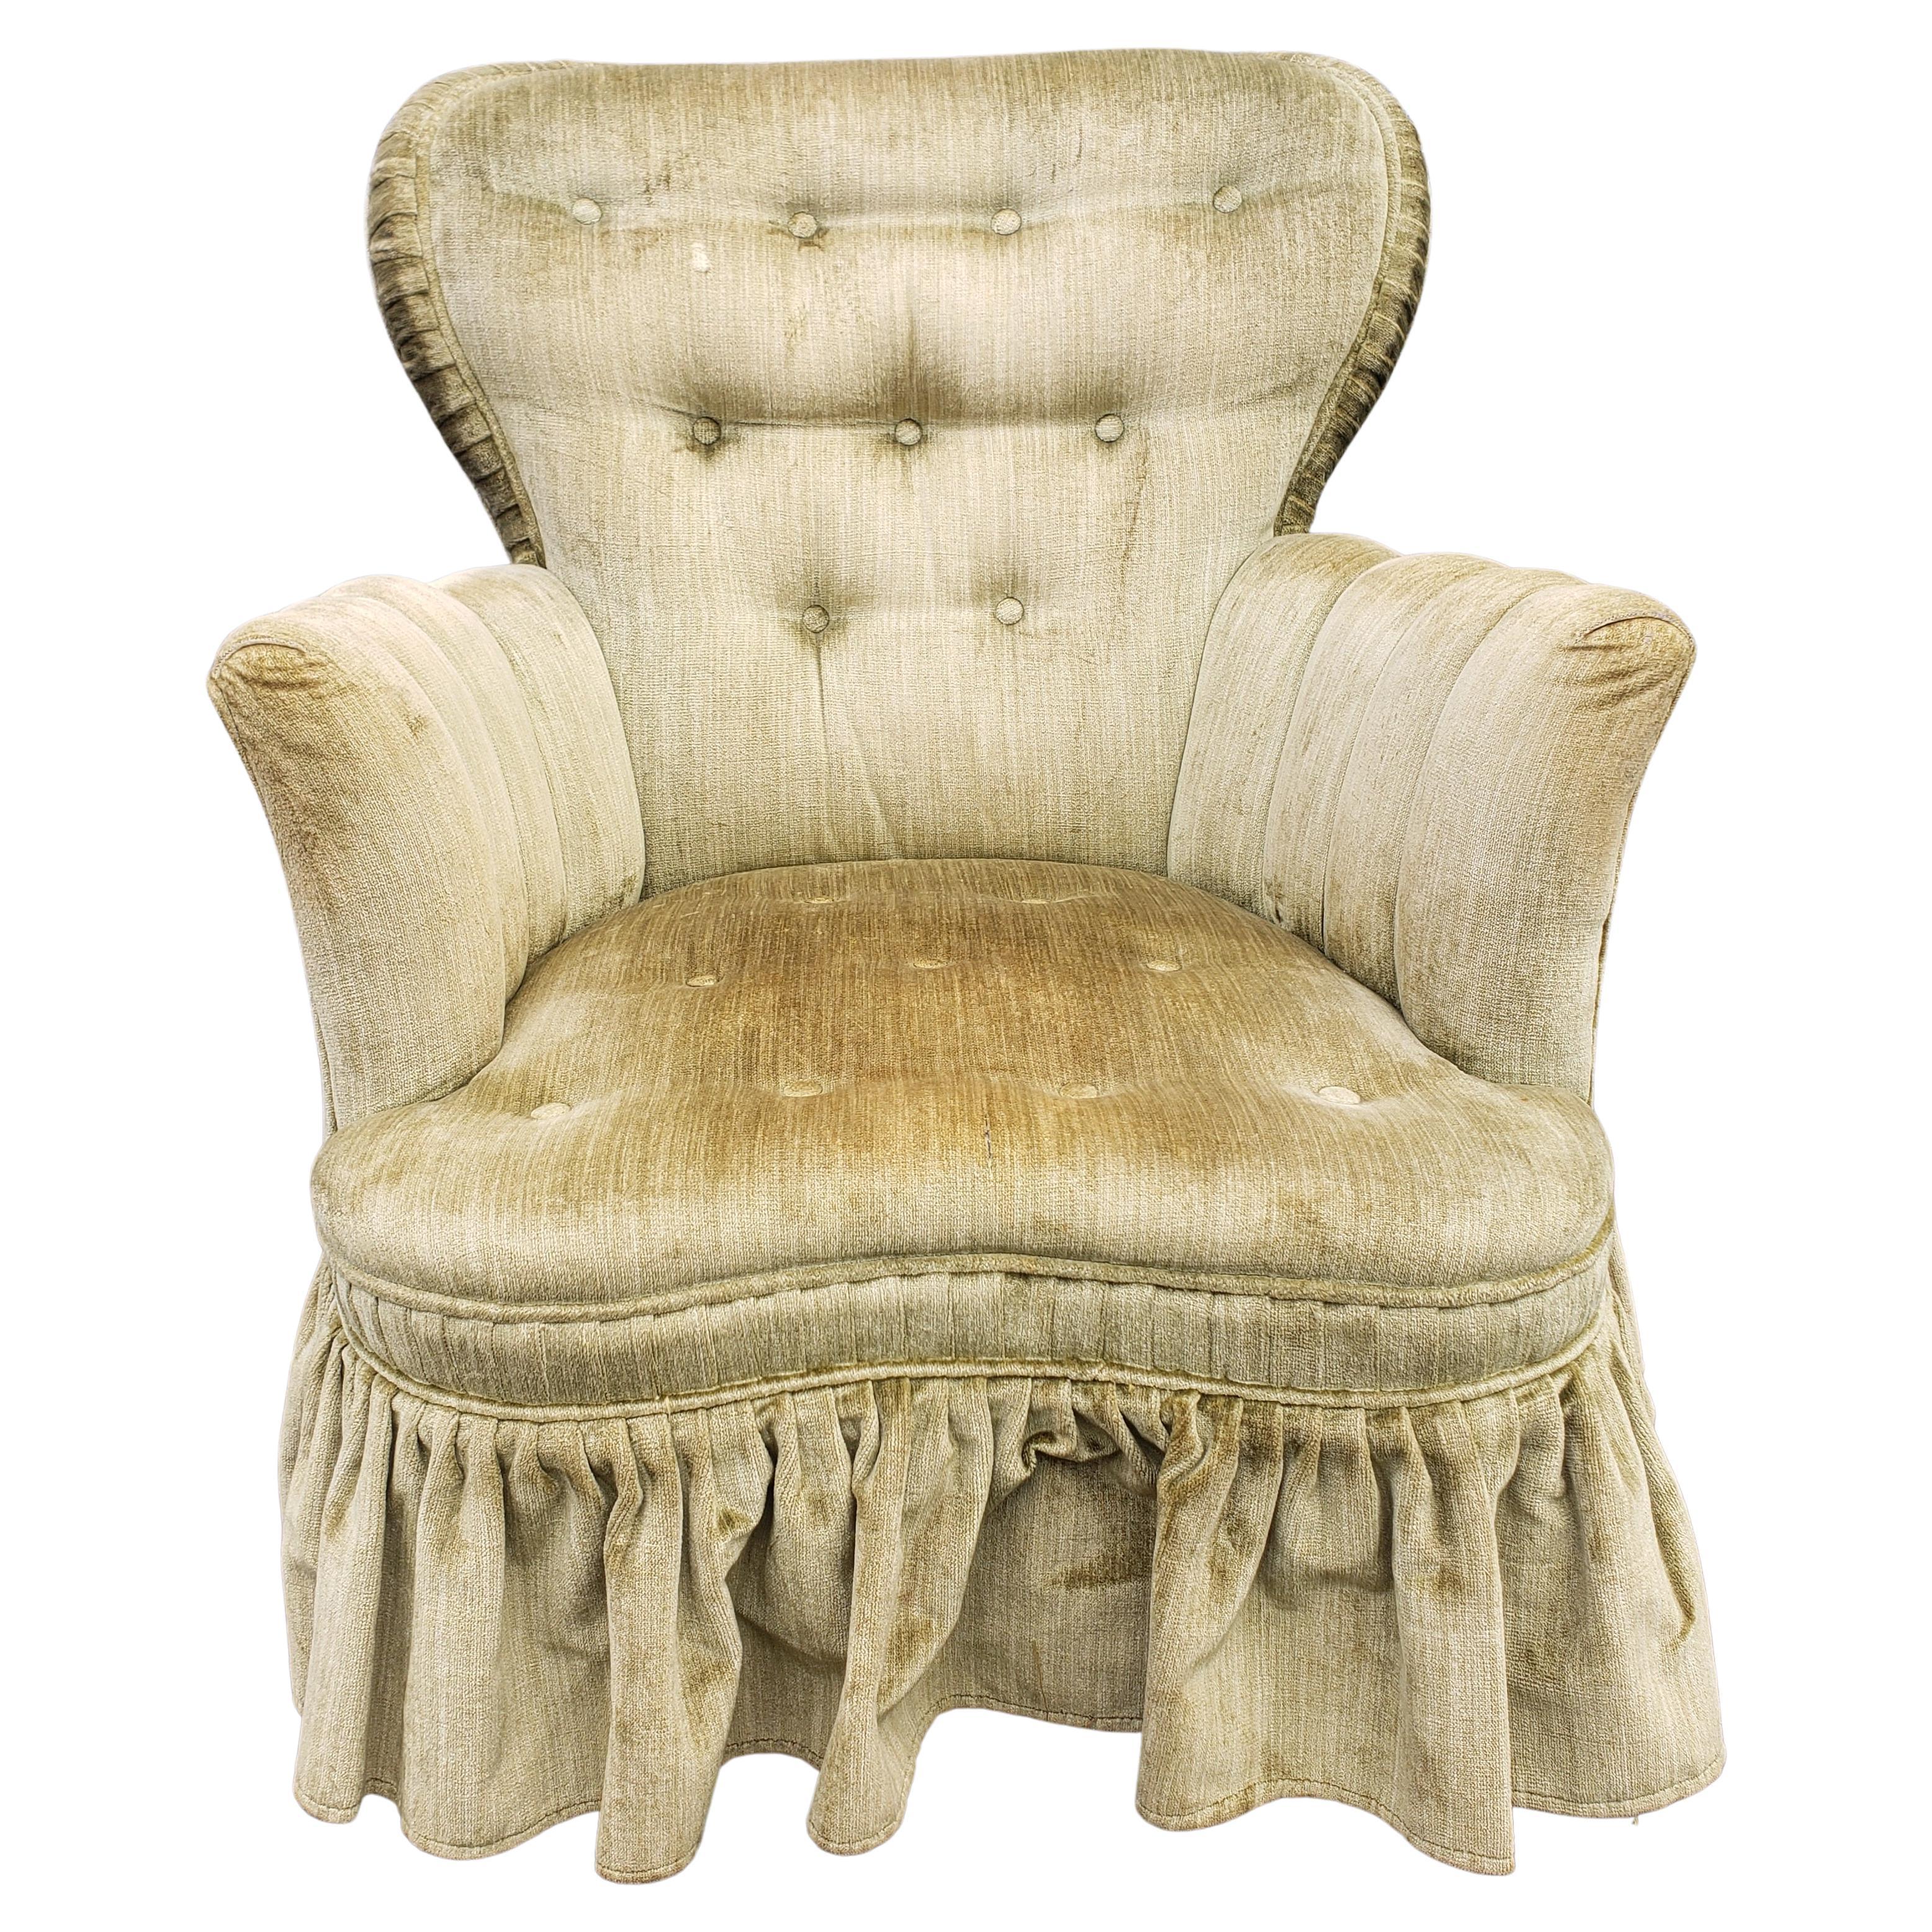 Ein Mid-Century Samt gepolstert und getuftet Olive Grün Lounge Chair mit Rock in gutem Vintage-Zustand. Der Sitz ist gefedert und weich, aber sehr fest. Niedrige Sitzhöhe von 14